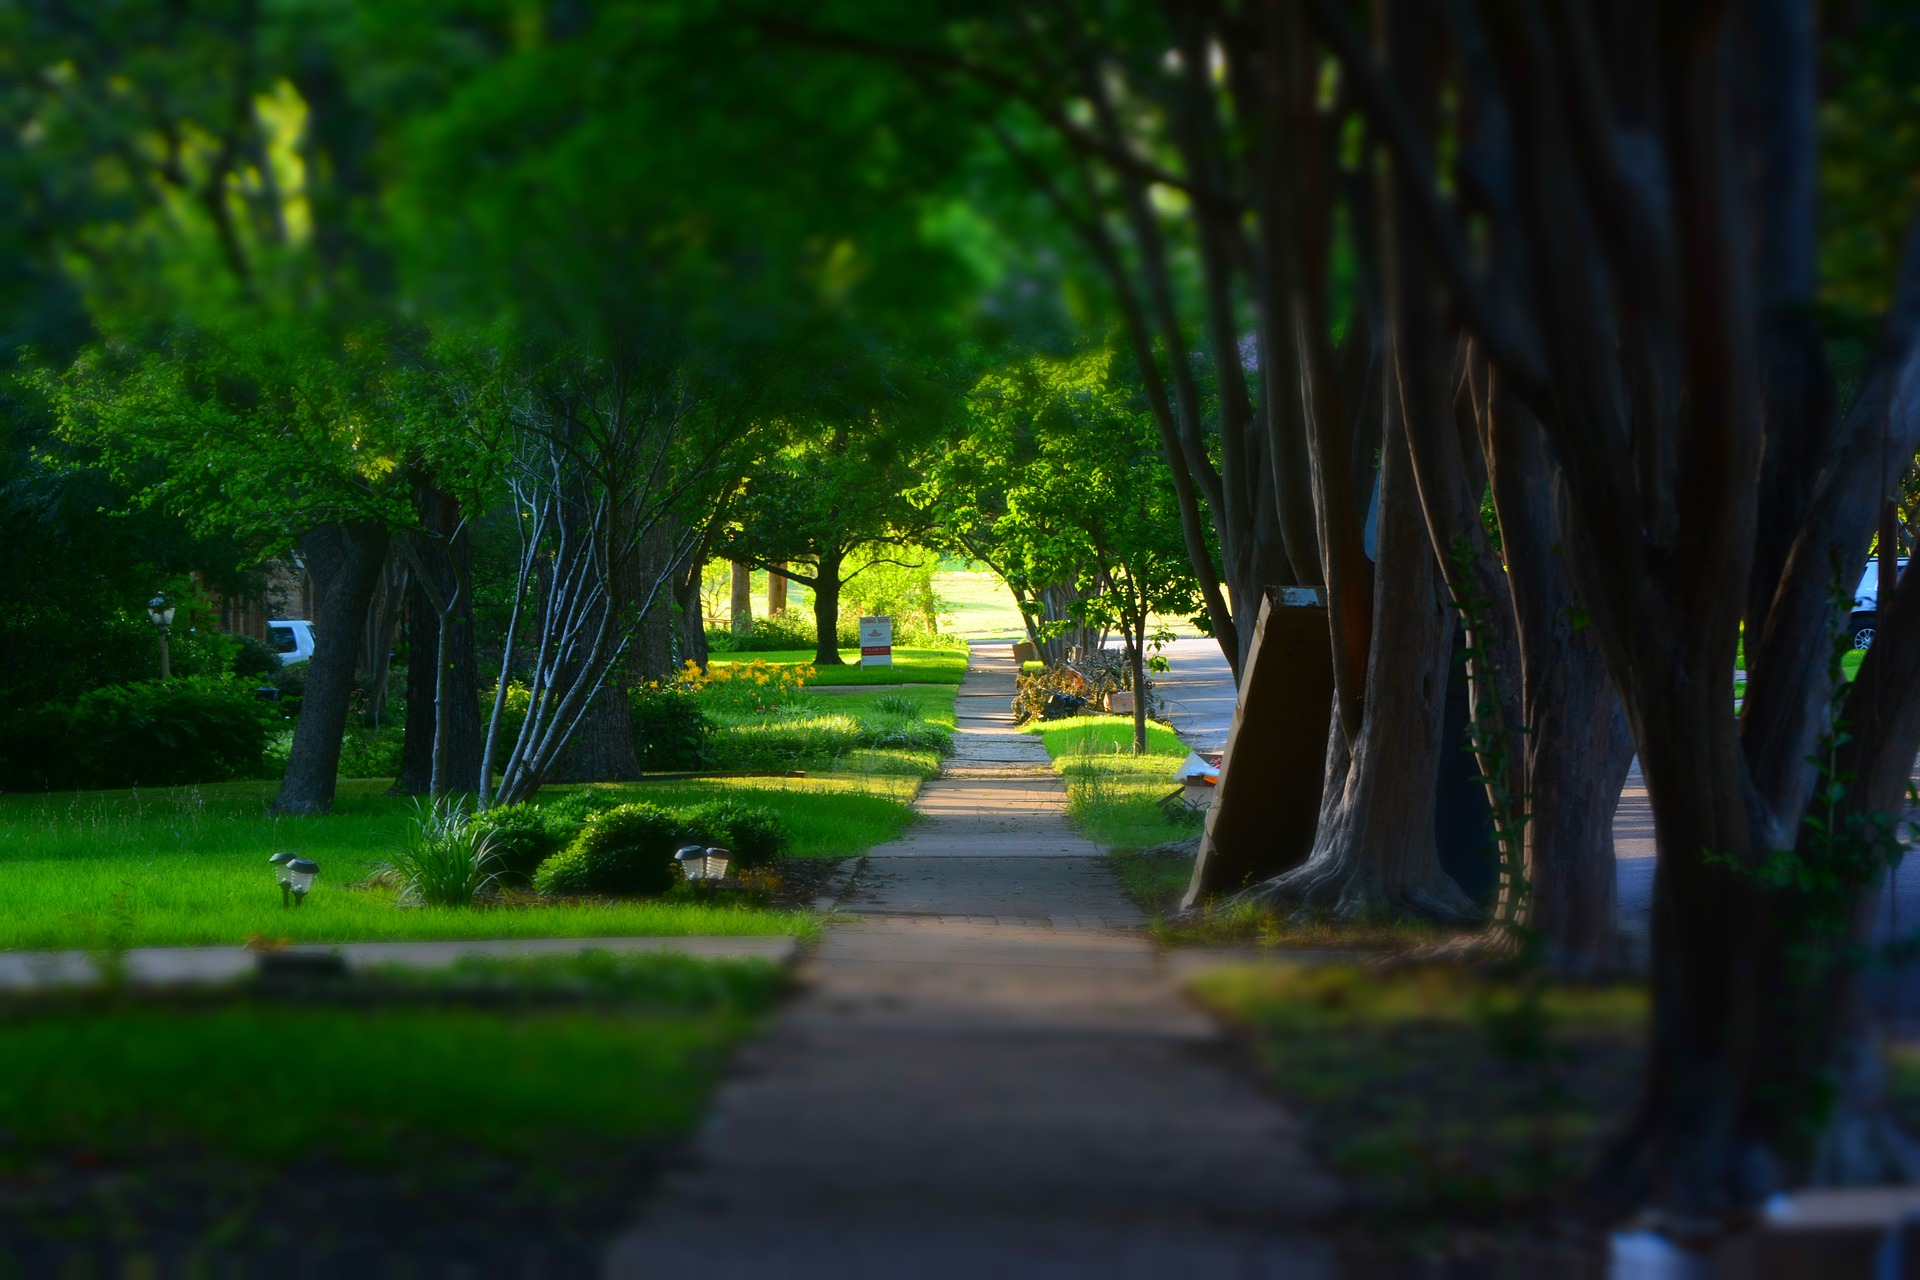 Sidewalk beneath shady trees